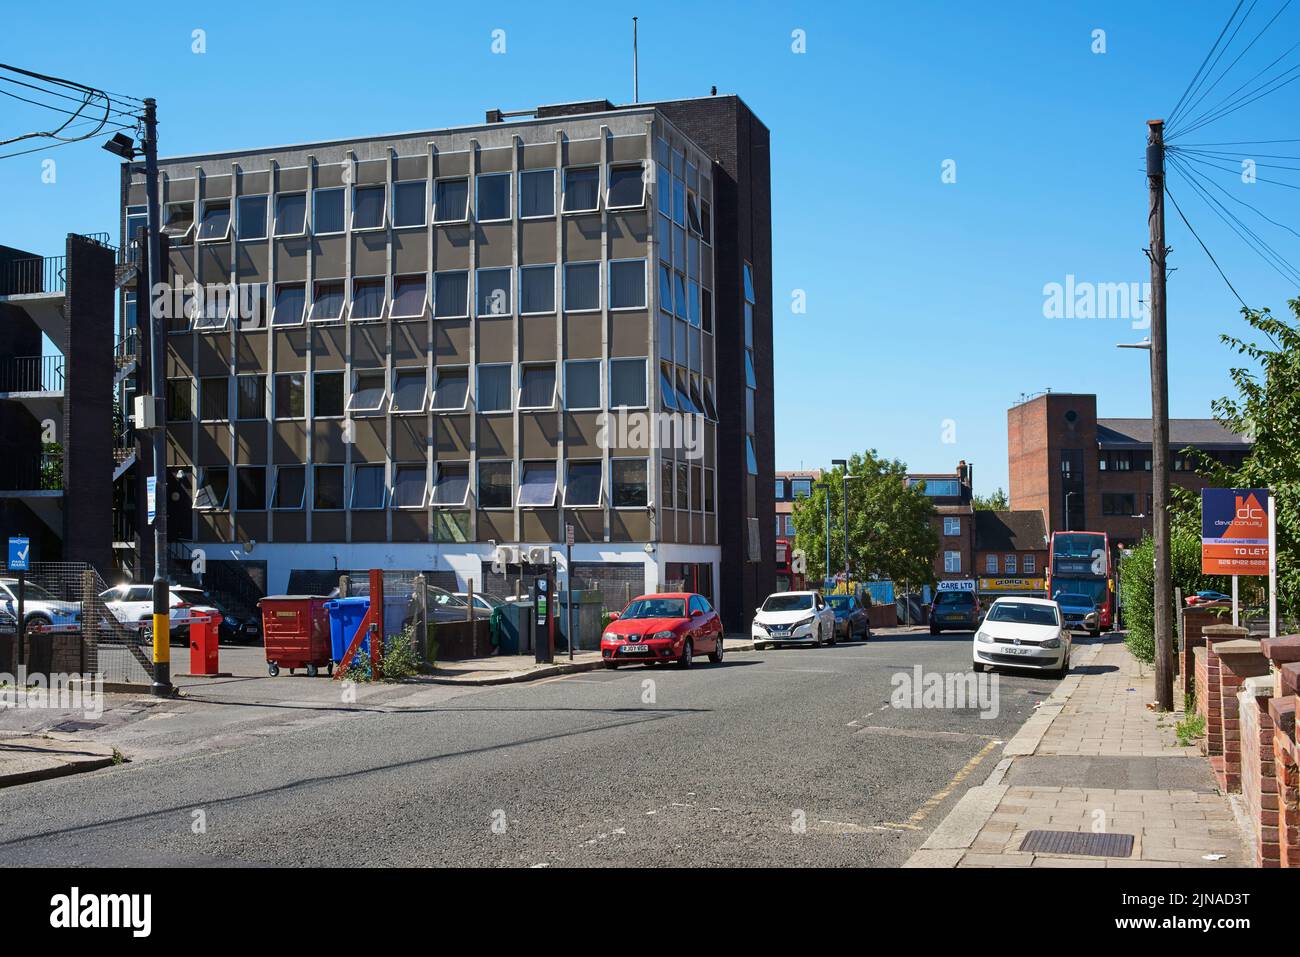 South Hill Avenue en el centro de South Harrow, Gran Londres, Reino Unido, con el Pentax House Building a la izquierda Foto de stock